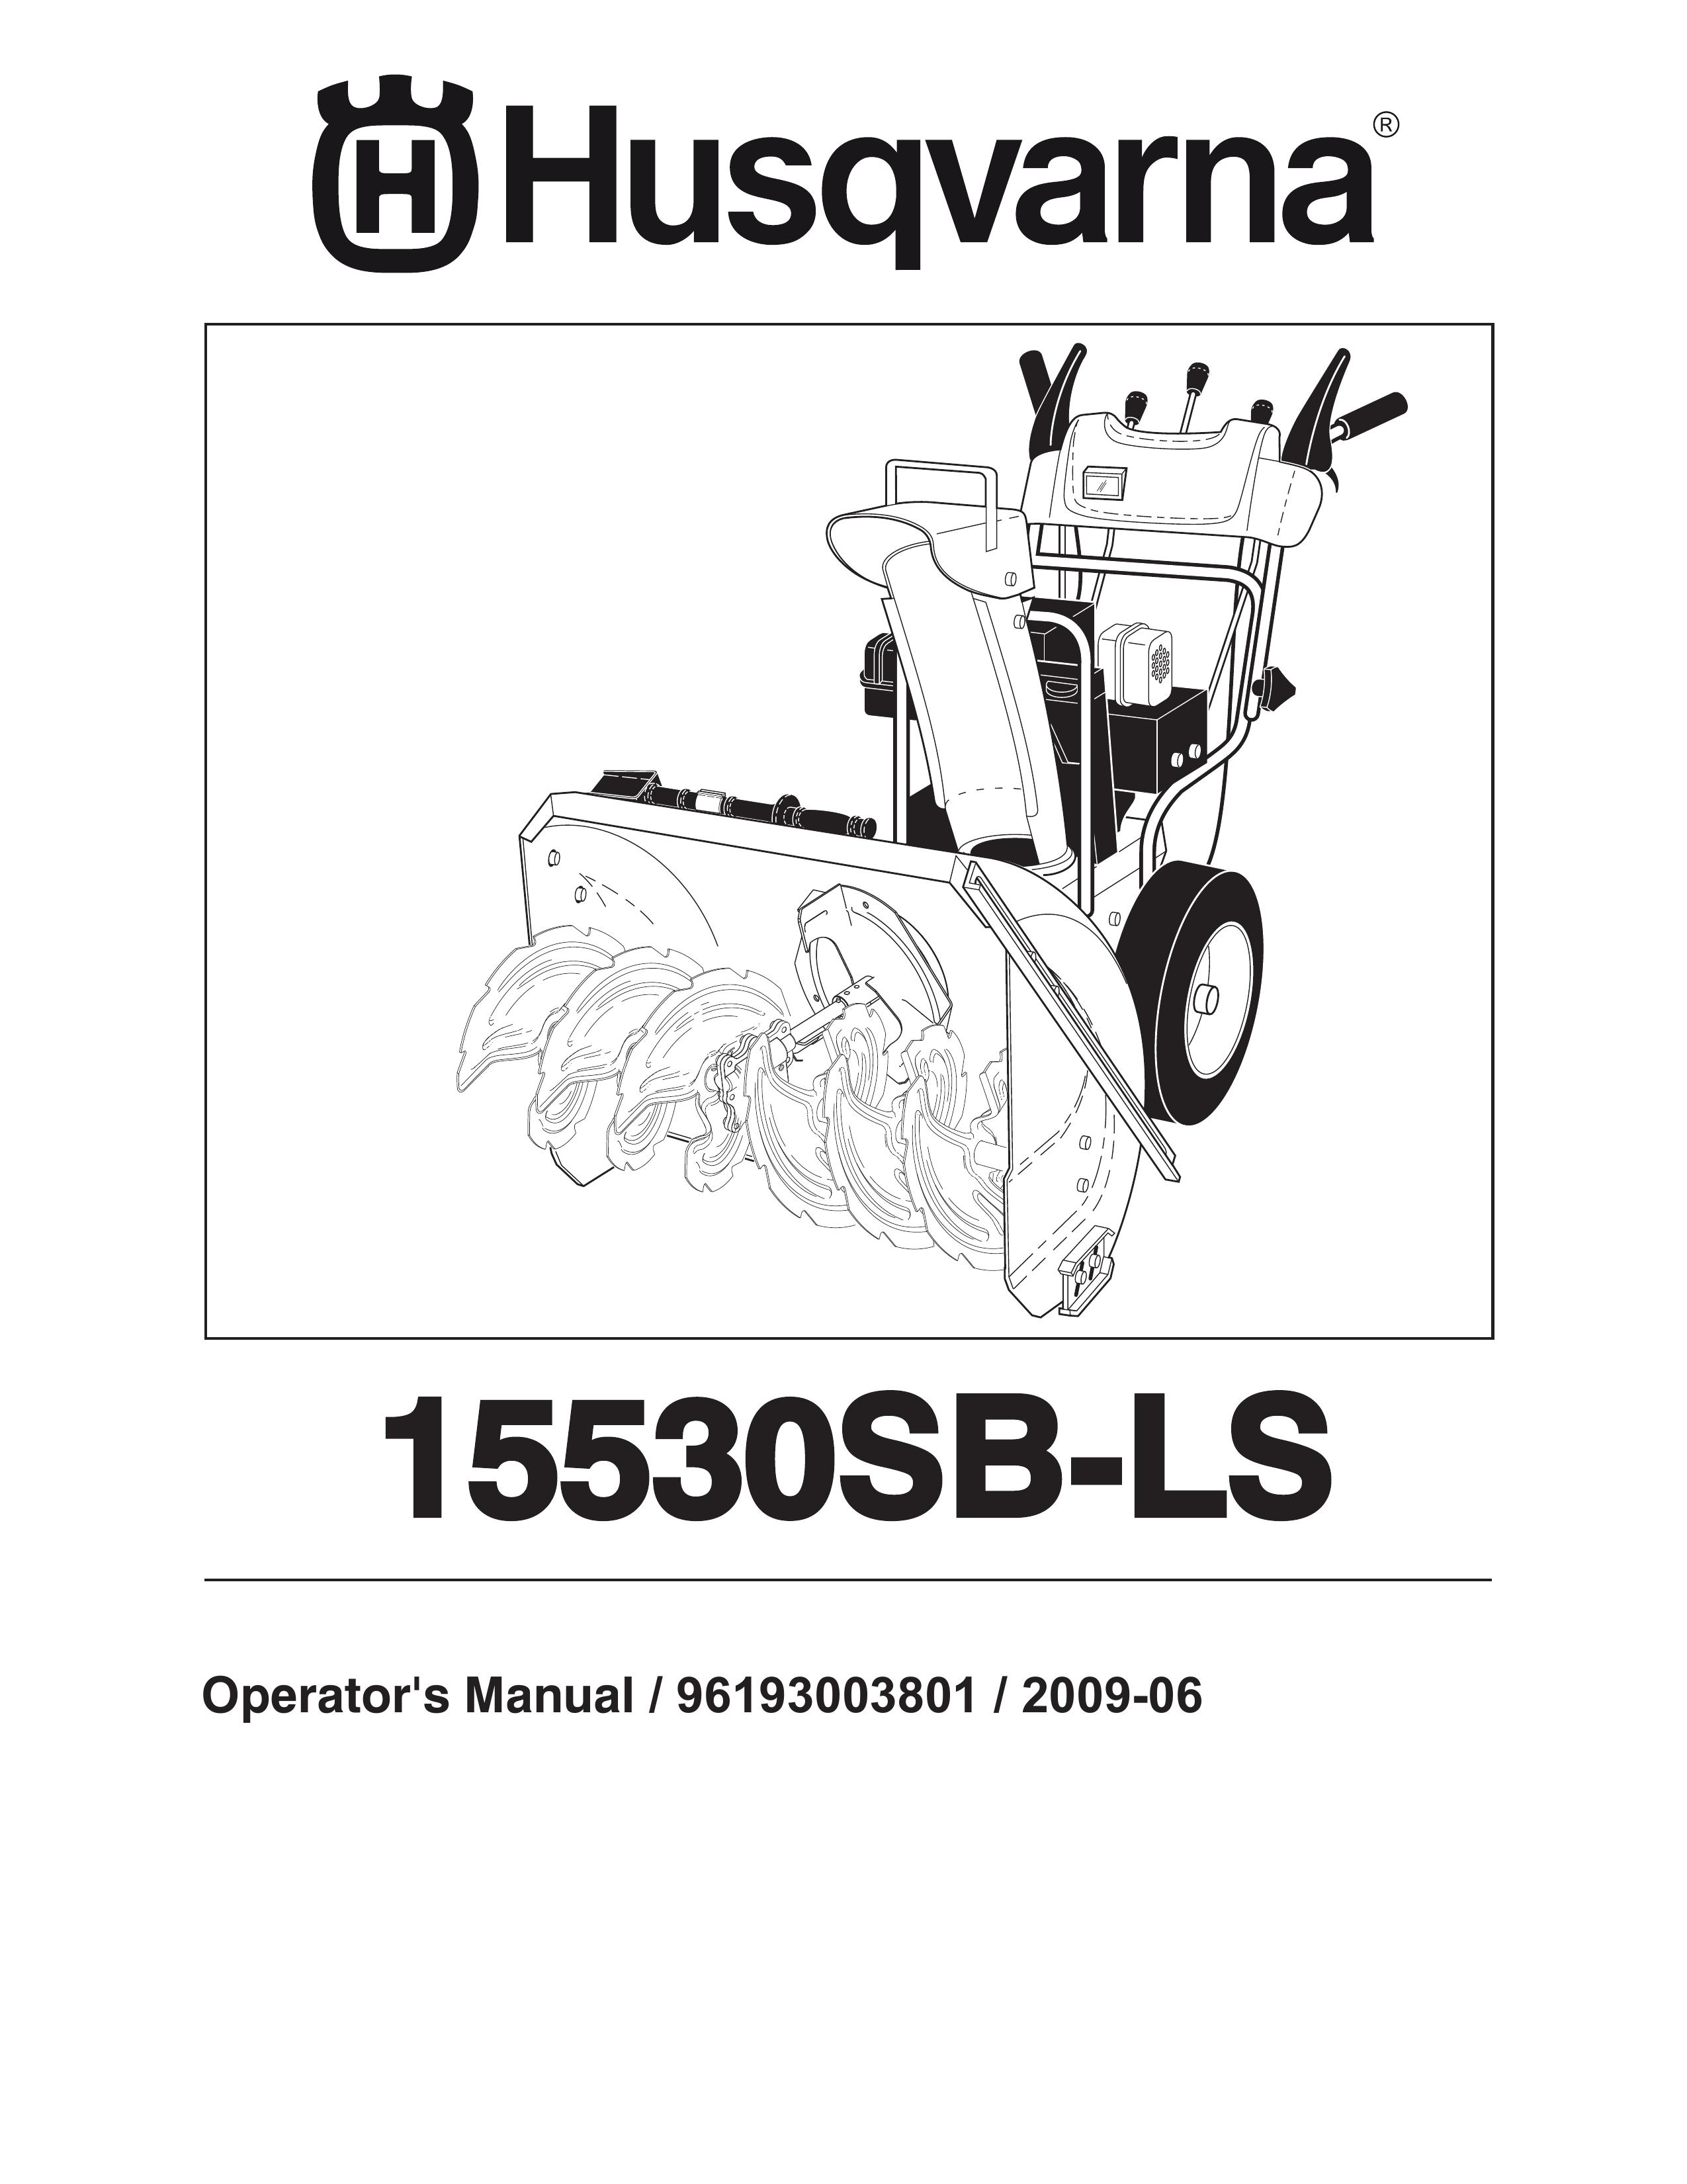 Husqvarna 15530SB-LS Snow Blower User Manual